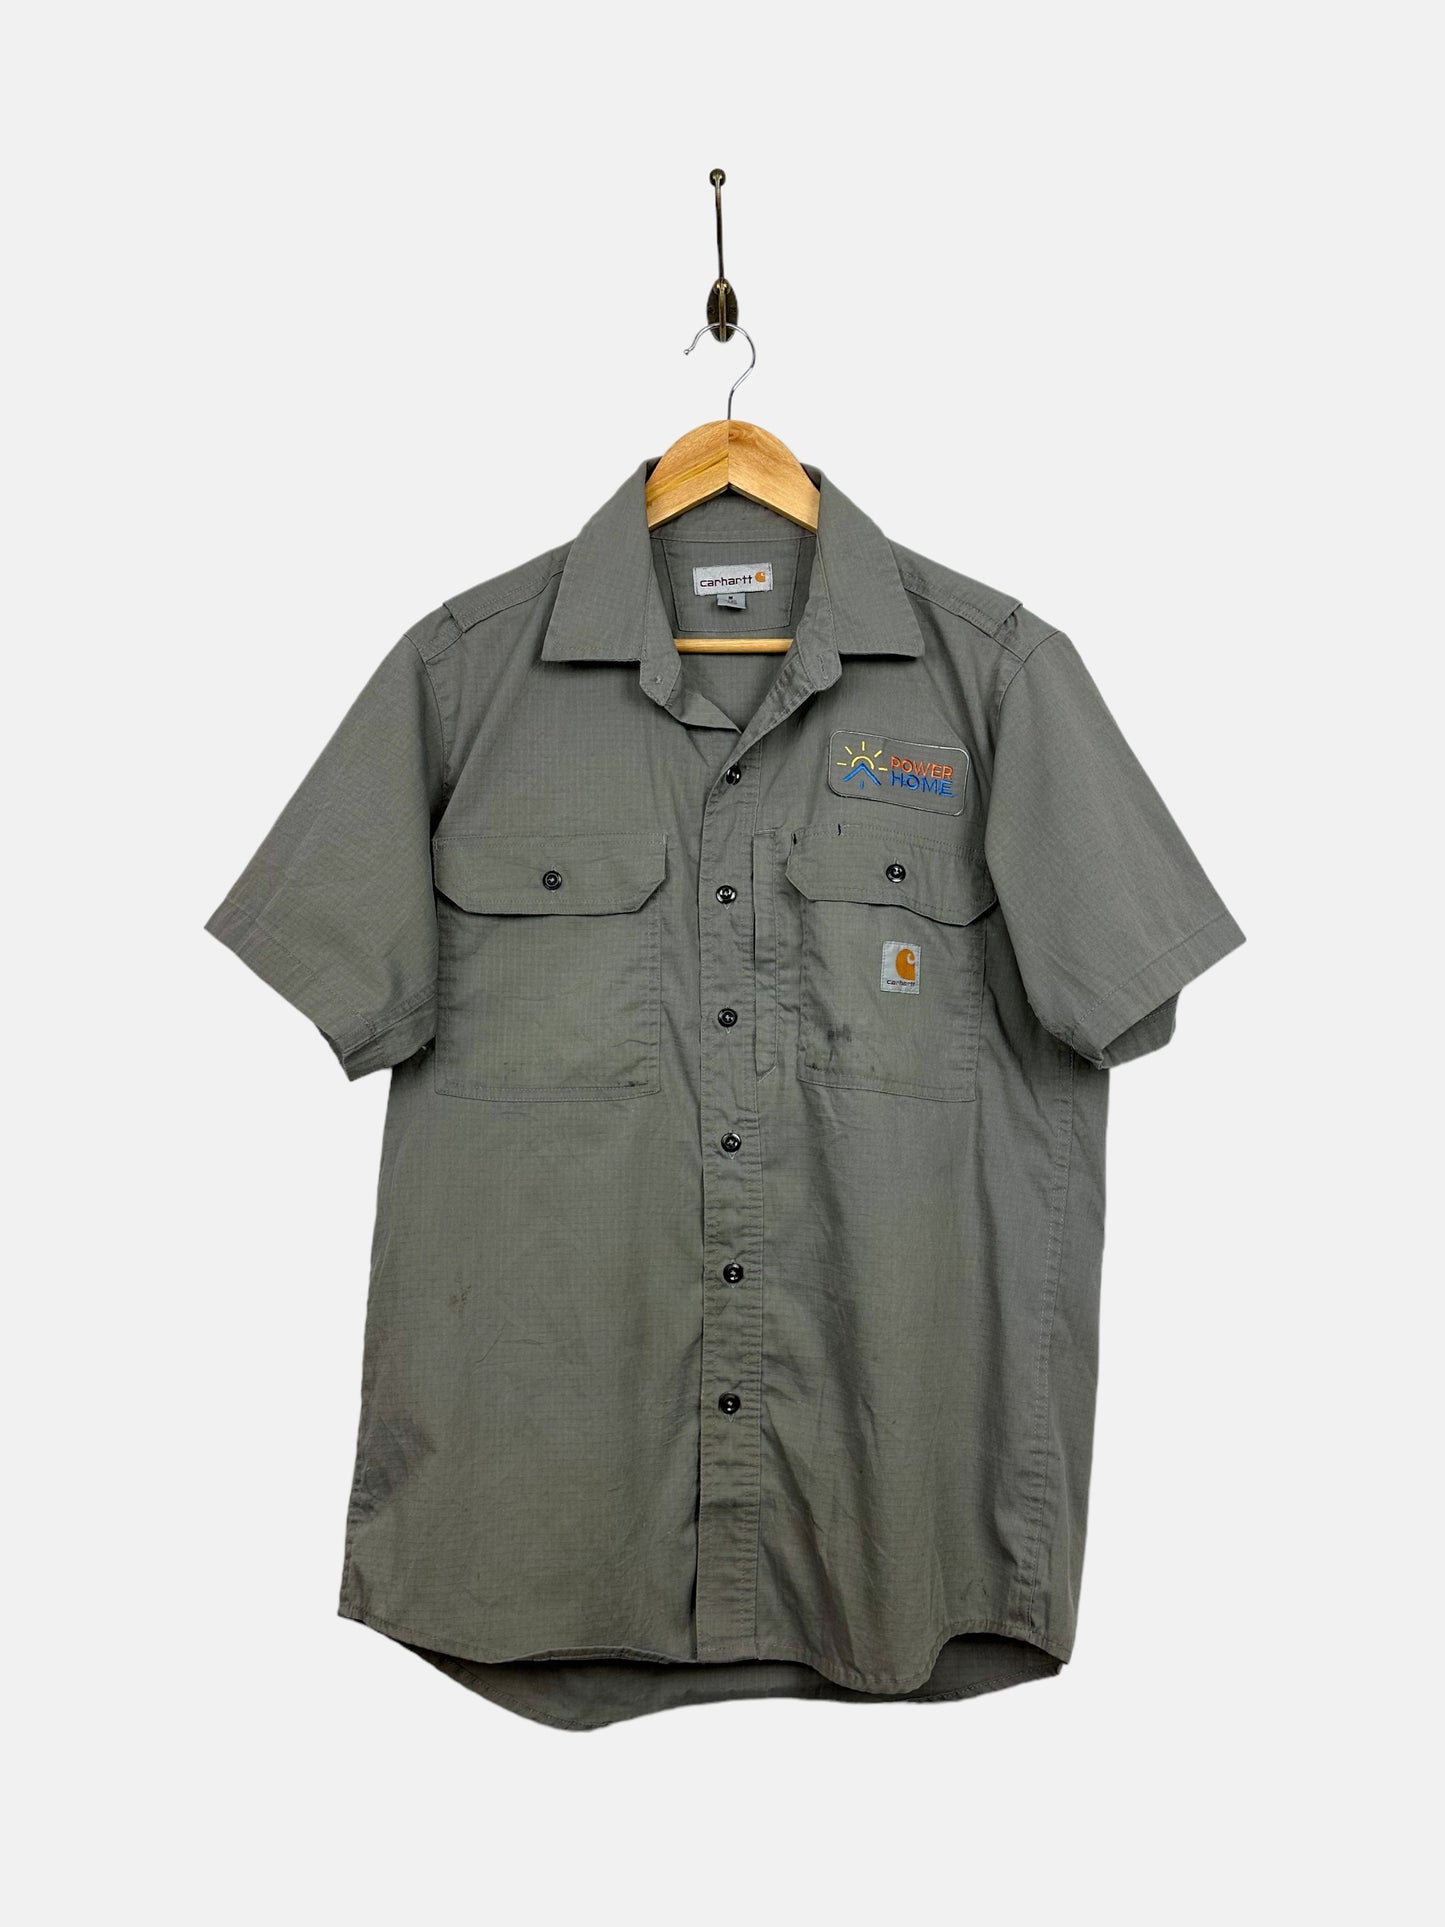 90's Carhartt Button-Up Short-Sleeve Shirt Size M